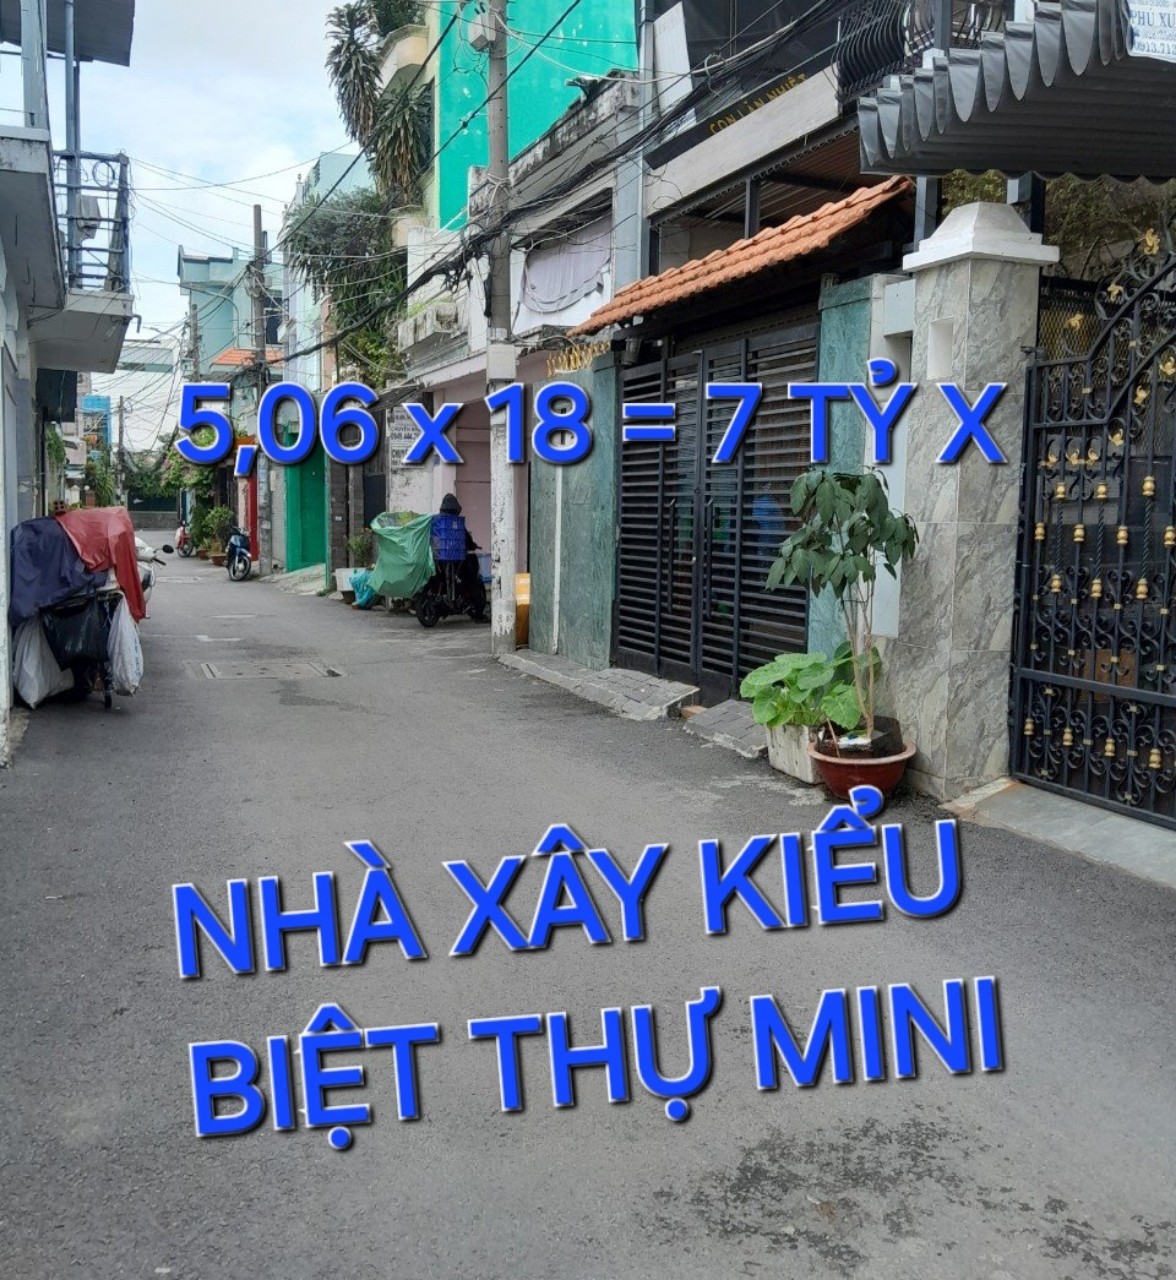 Biệt Thự Lô Góc 3 tầng 92m2 7tỷx Phạm Văn Chiêu Gò Vấp TPHCM - 0333984888 2